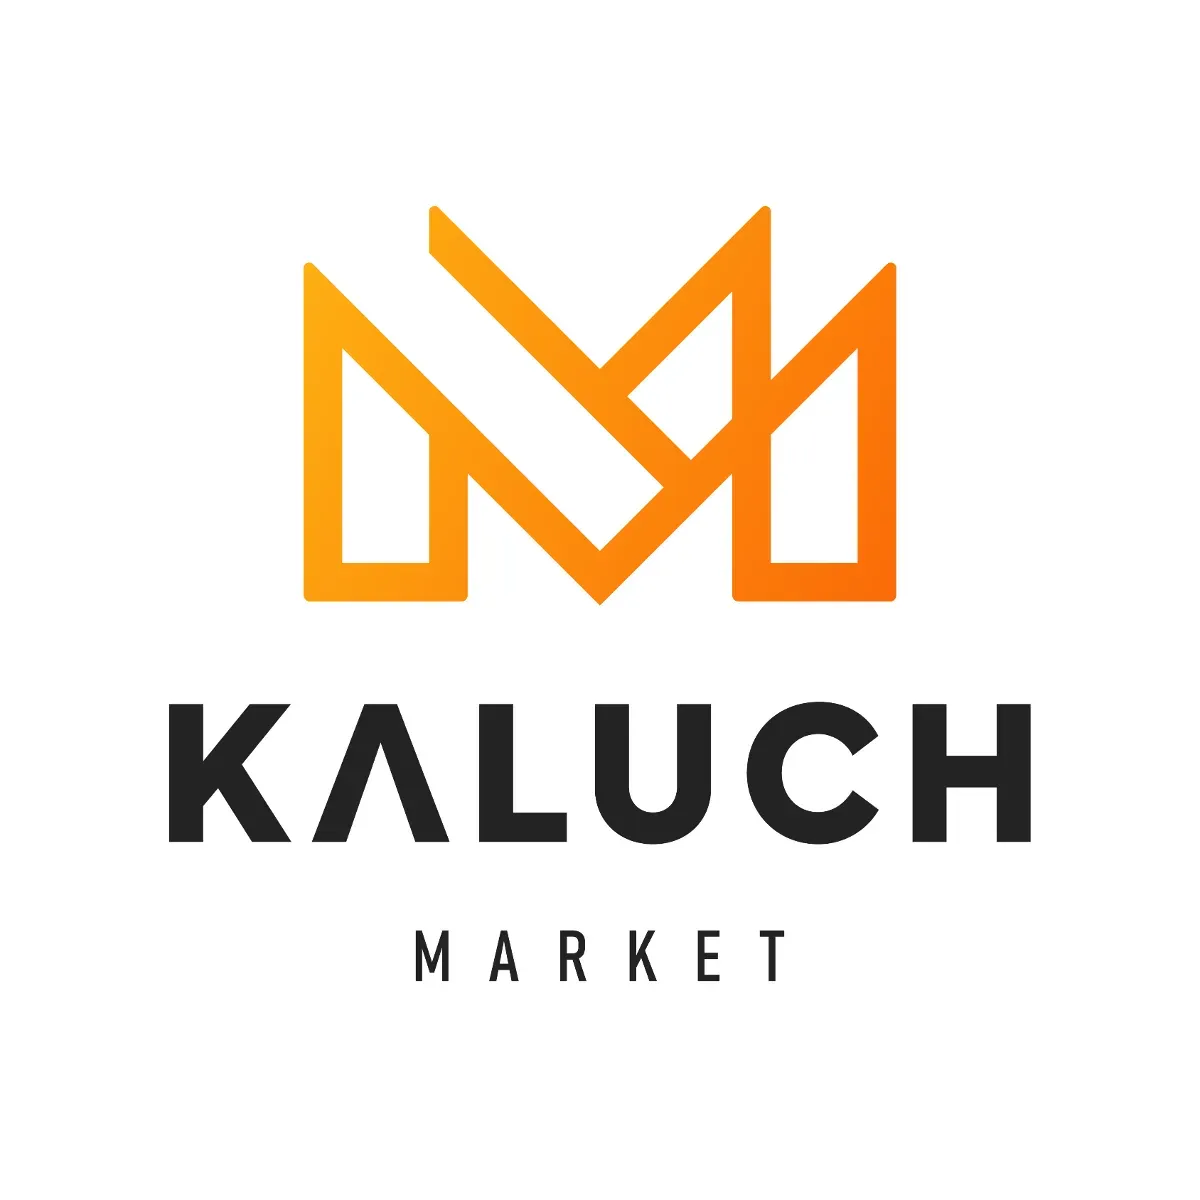 Kaluch Market